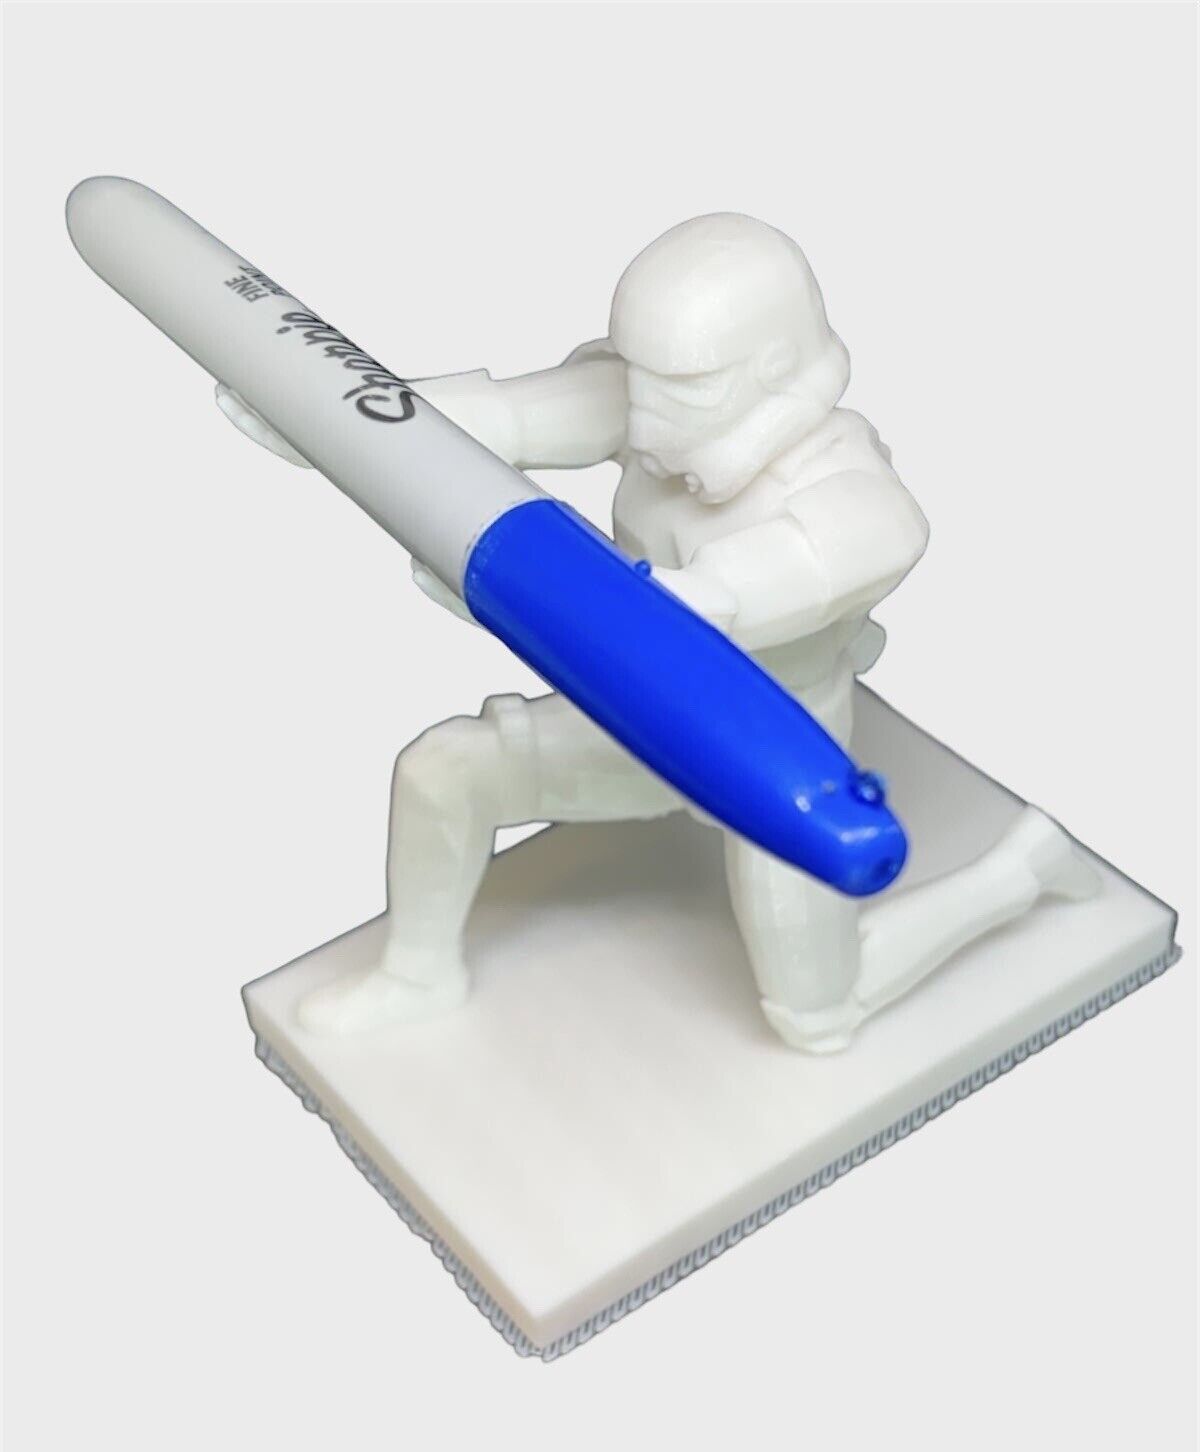 3D Printed Star Wars Storm Trooper Pen & Ring Holder